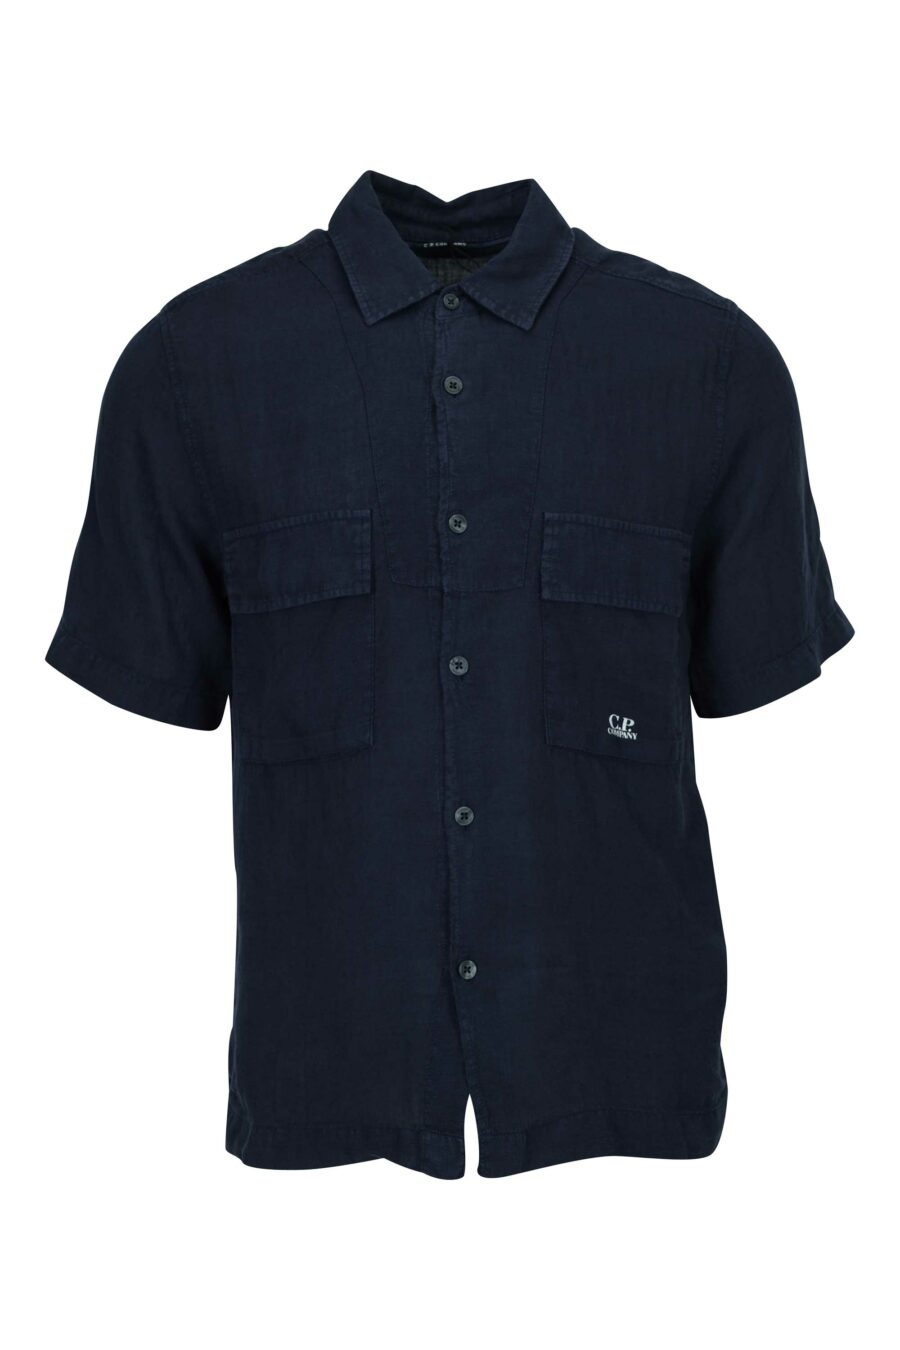 C.P. Company - Camisa manga corta azul oscuro con botones y